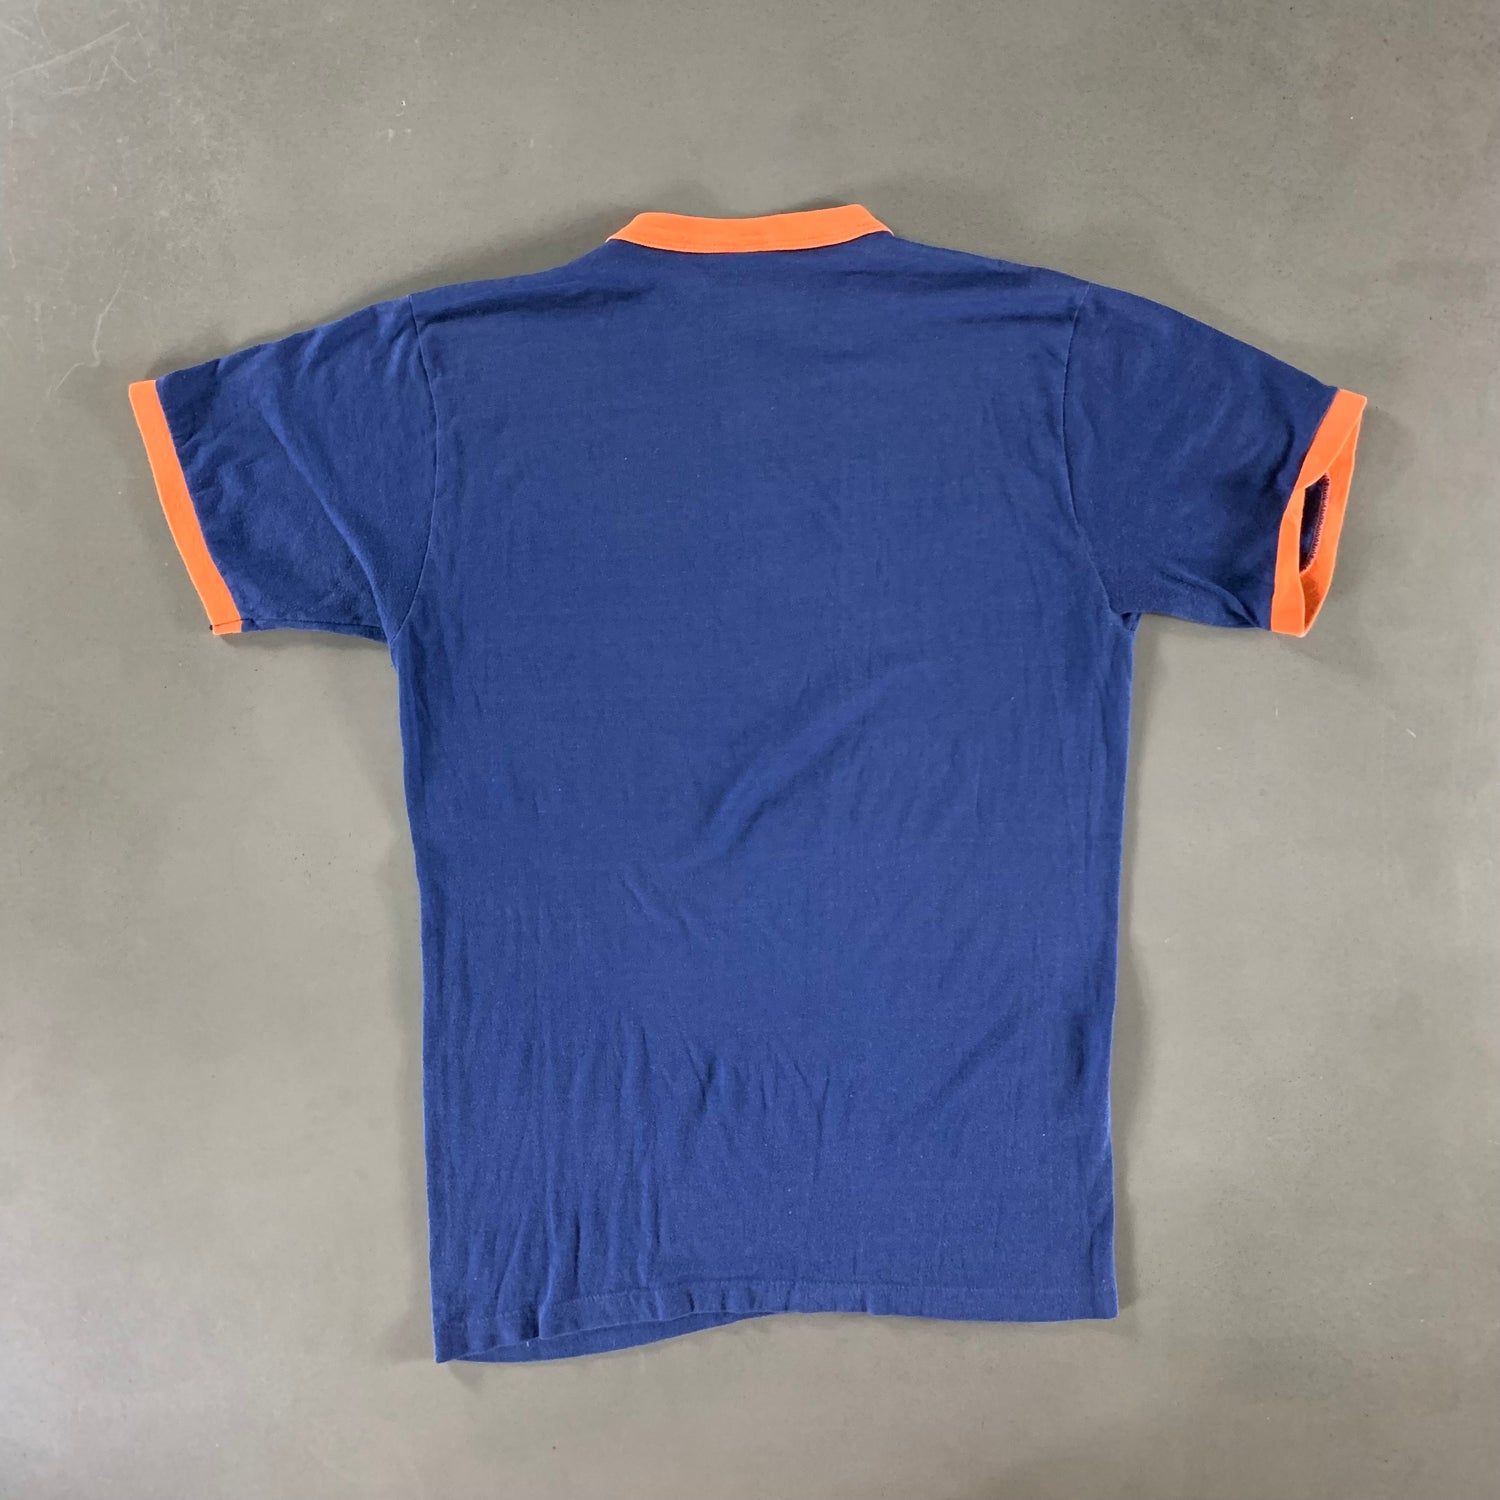 Vintage 1980s Syracuse University T-shirt size Lage